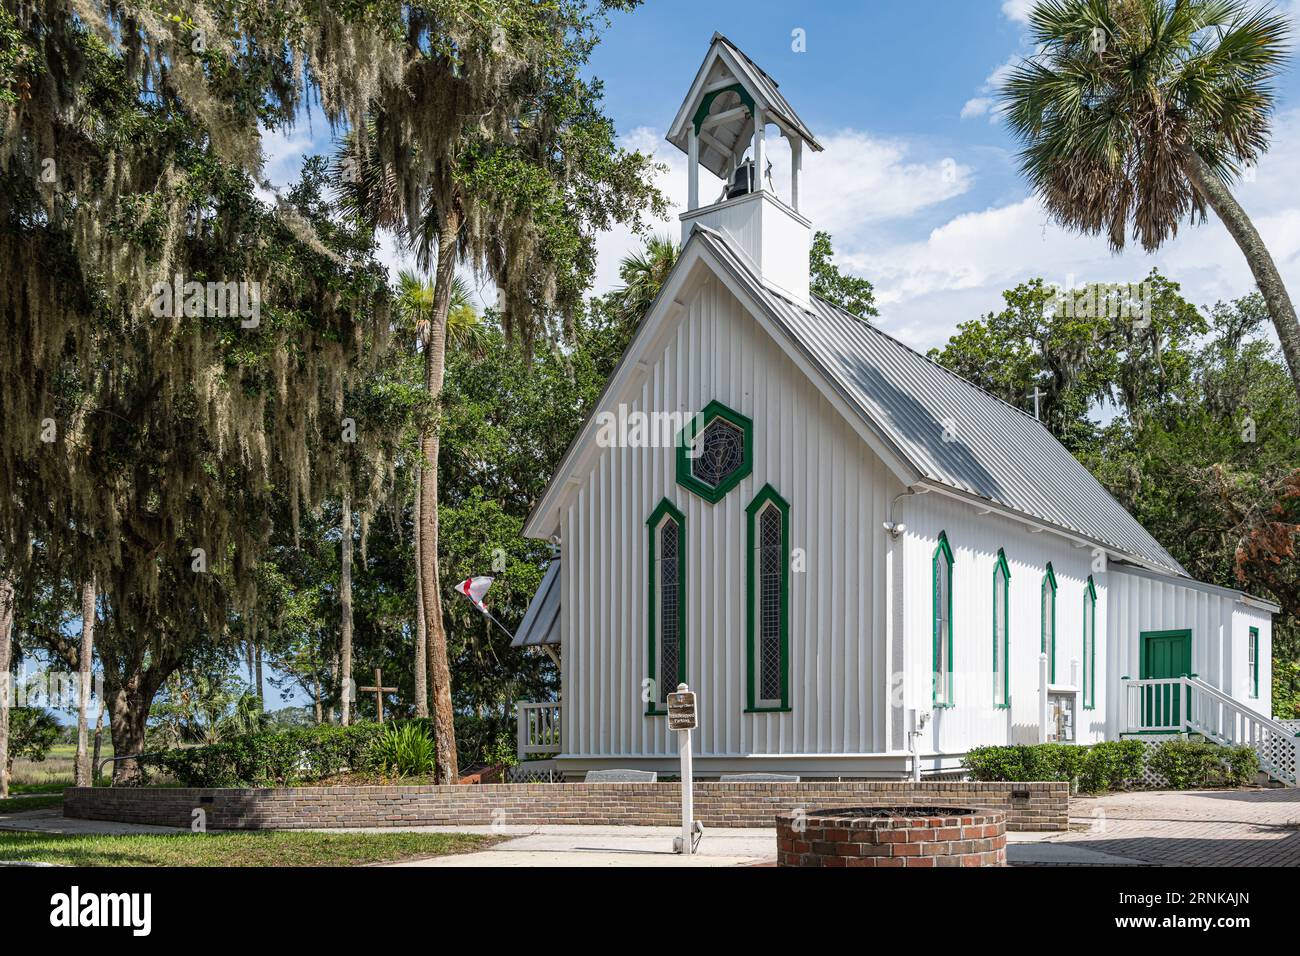 Historique St. Bâtiment de l'église épiscopale George, construit en 1882 dans le style gothique Carpenter, sur l'île de fort George à Jacksonville, en Floride. (ÉTATS-UNIS) Banque D'Images